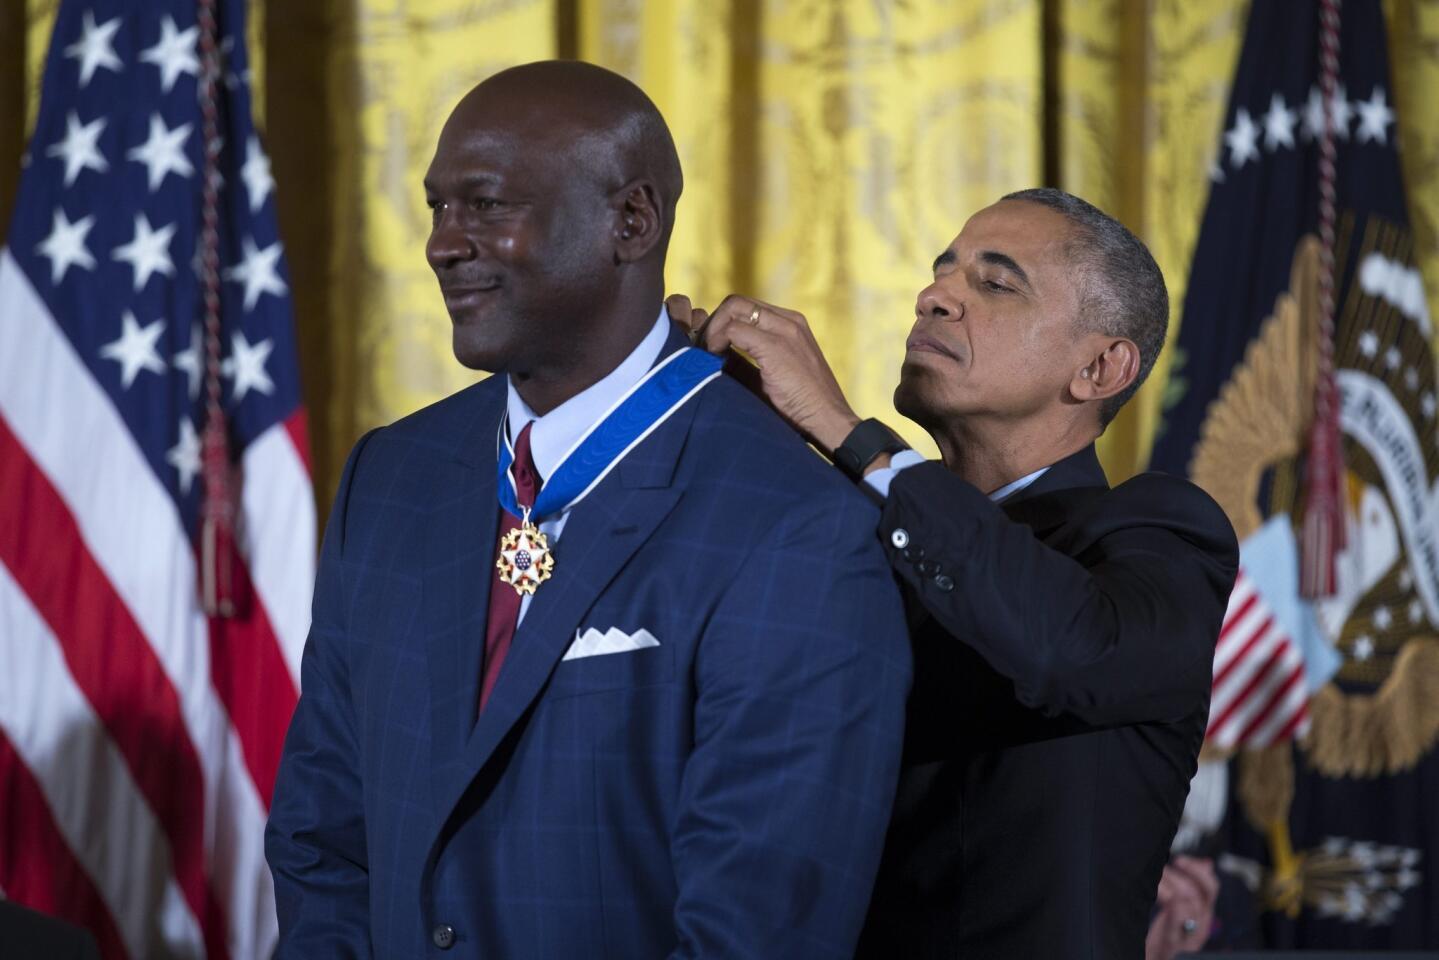 NBA legend Michael Jordan receives his medal.